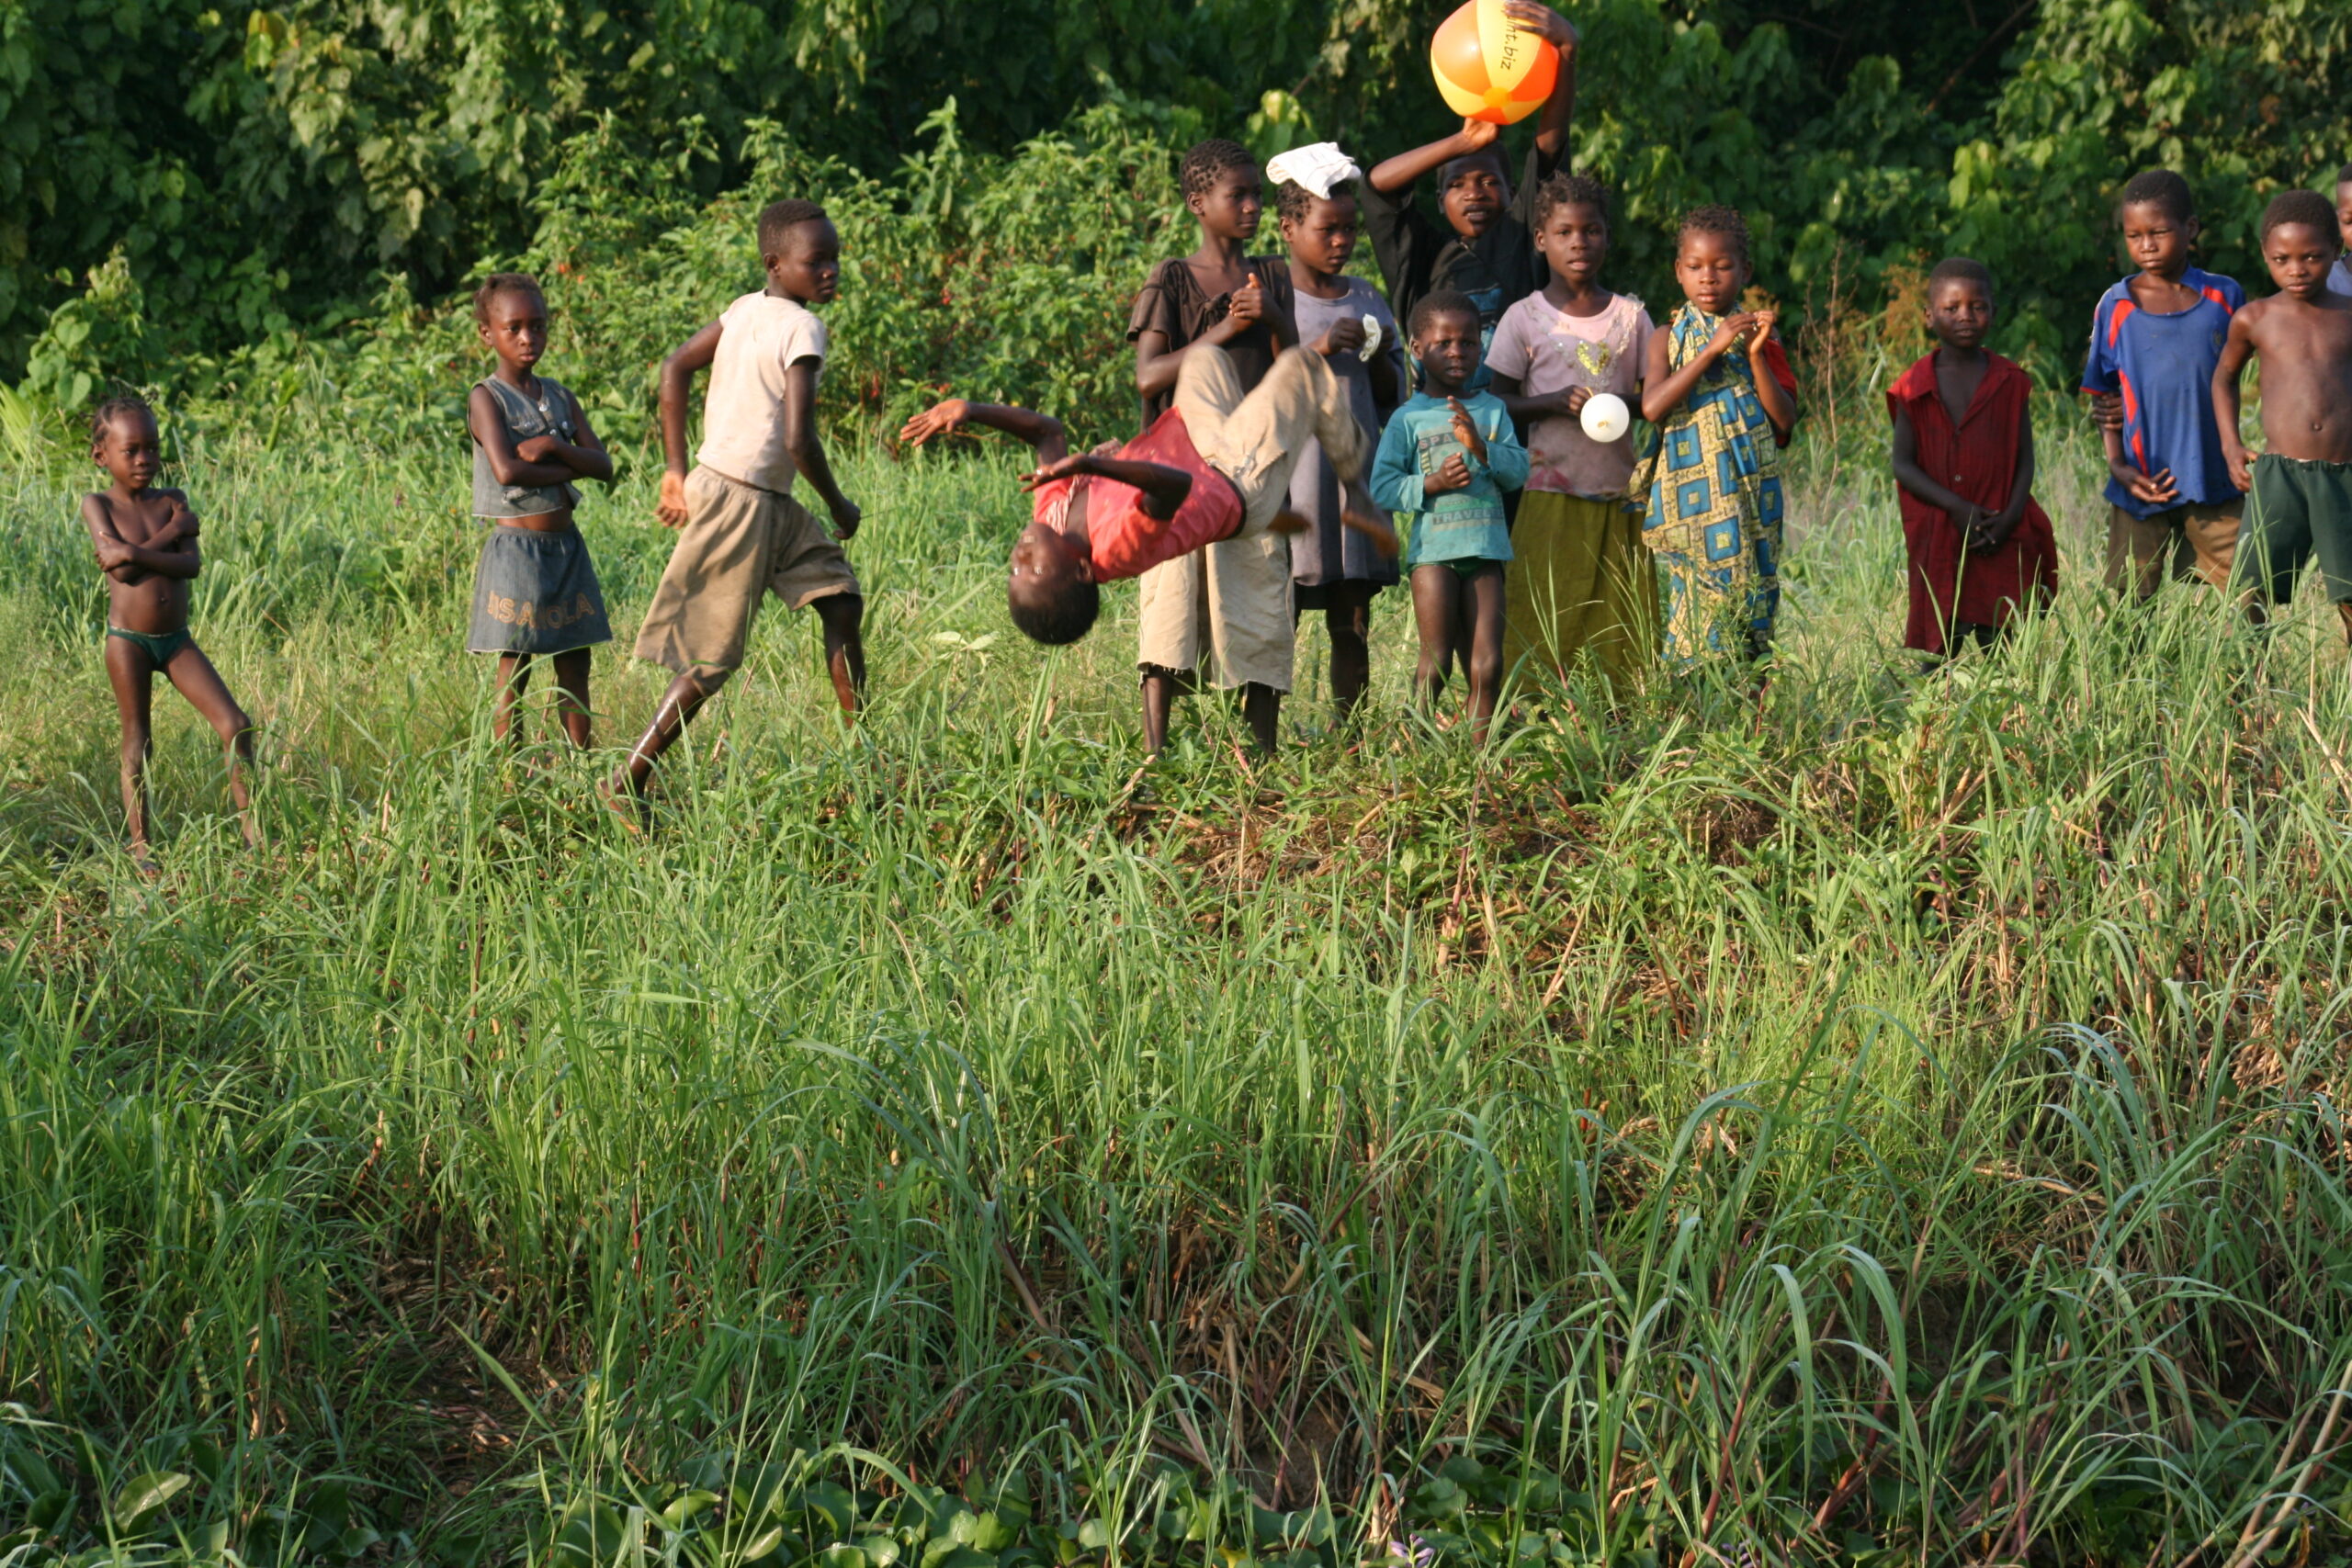 Child doing backflips in Malonbolombo village